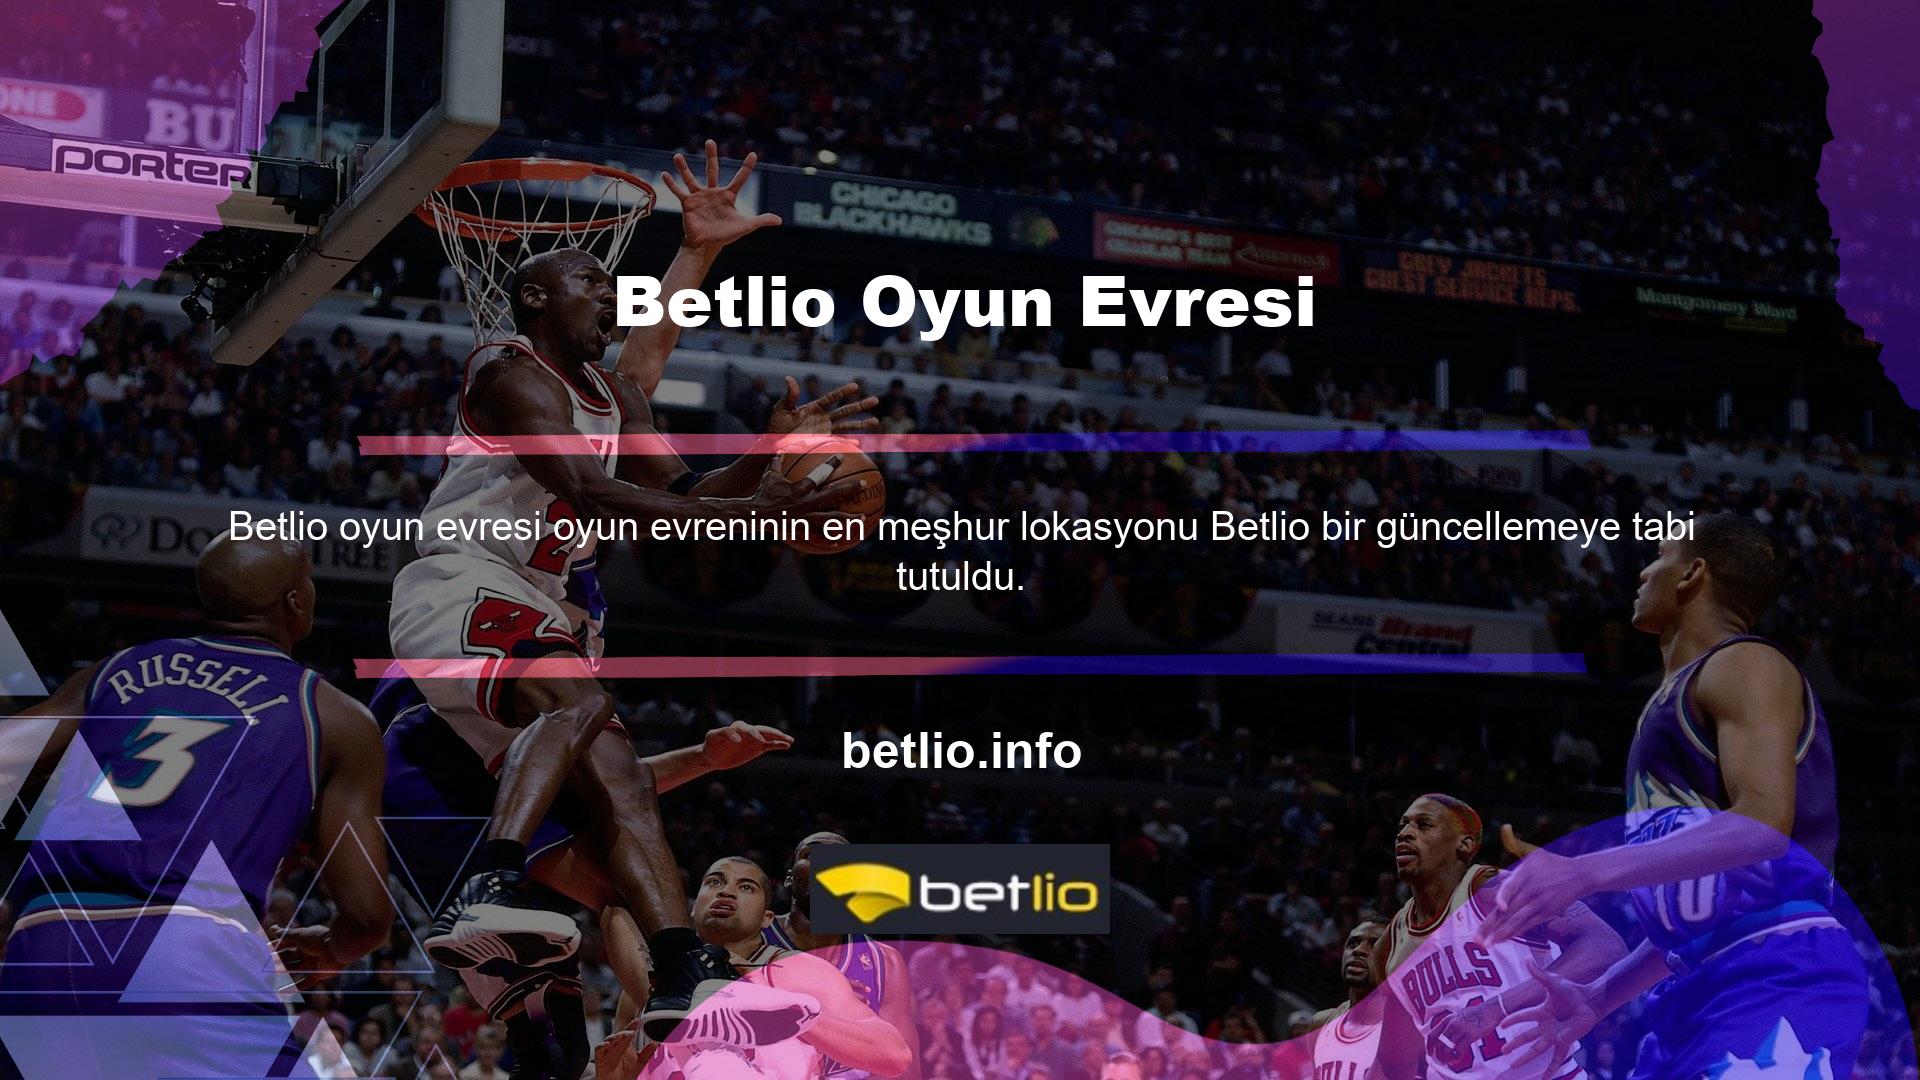 Bu web sitesinin adı Betlio gibi farklı bir ad altında çevrimiçi olarak mevcuttur